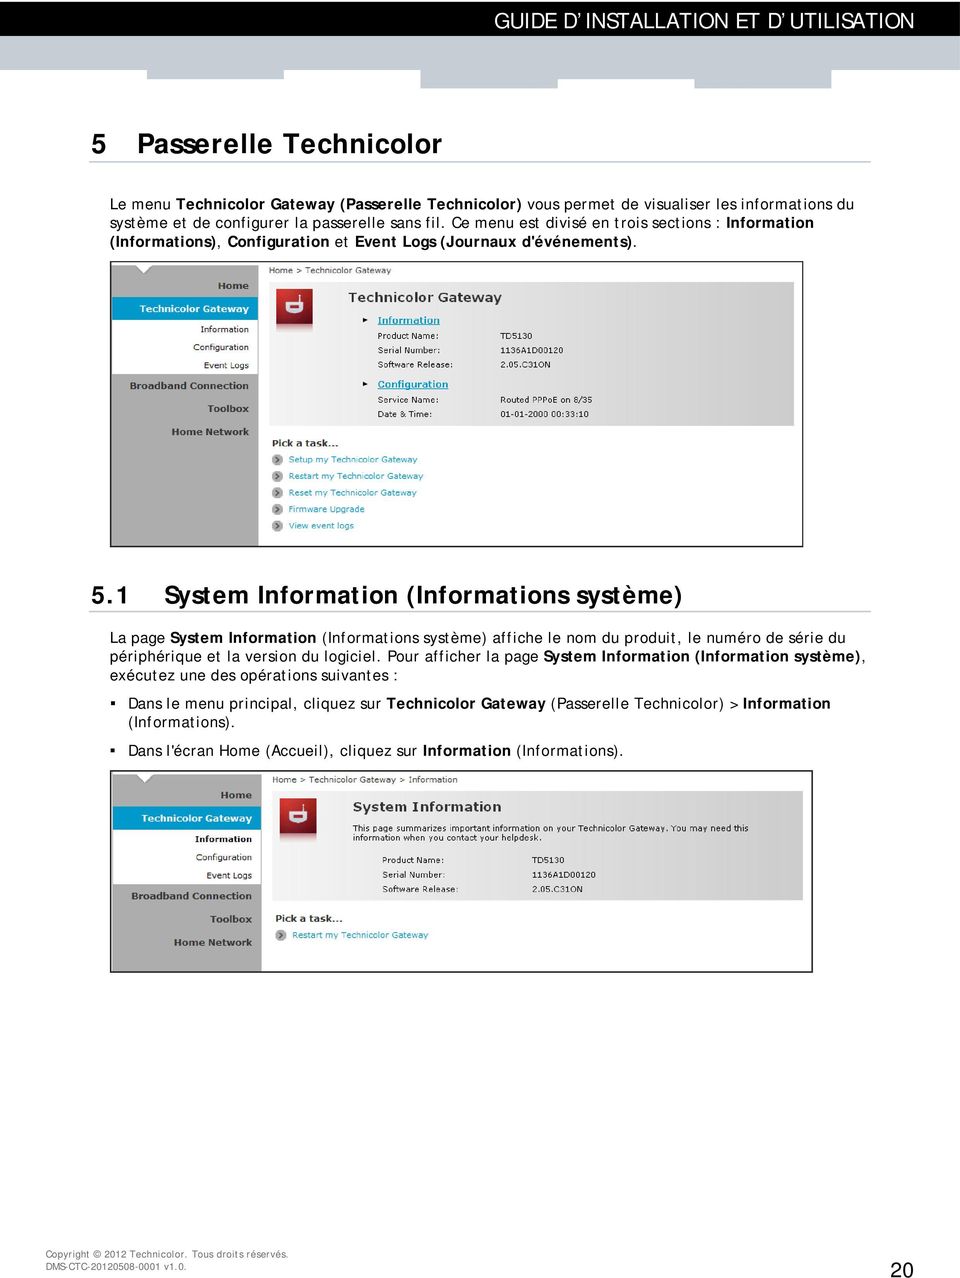 1 System Information (Informations système) La page System Information (Informations système) affiche le nom du produit, le numéro de série du périphérique et la version du logiciel.